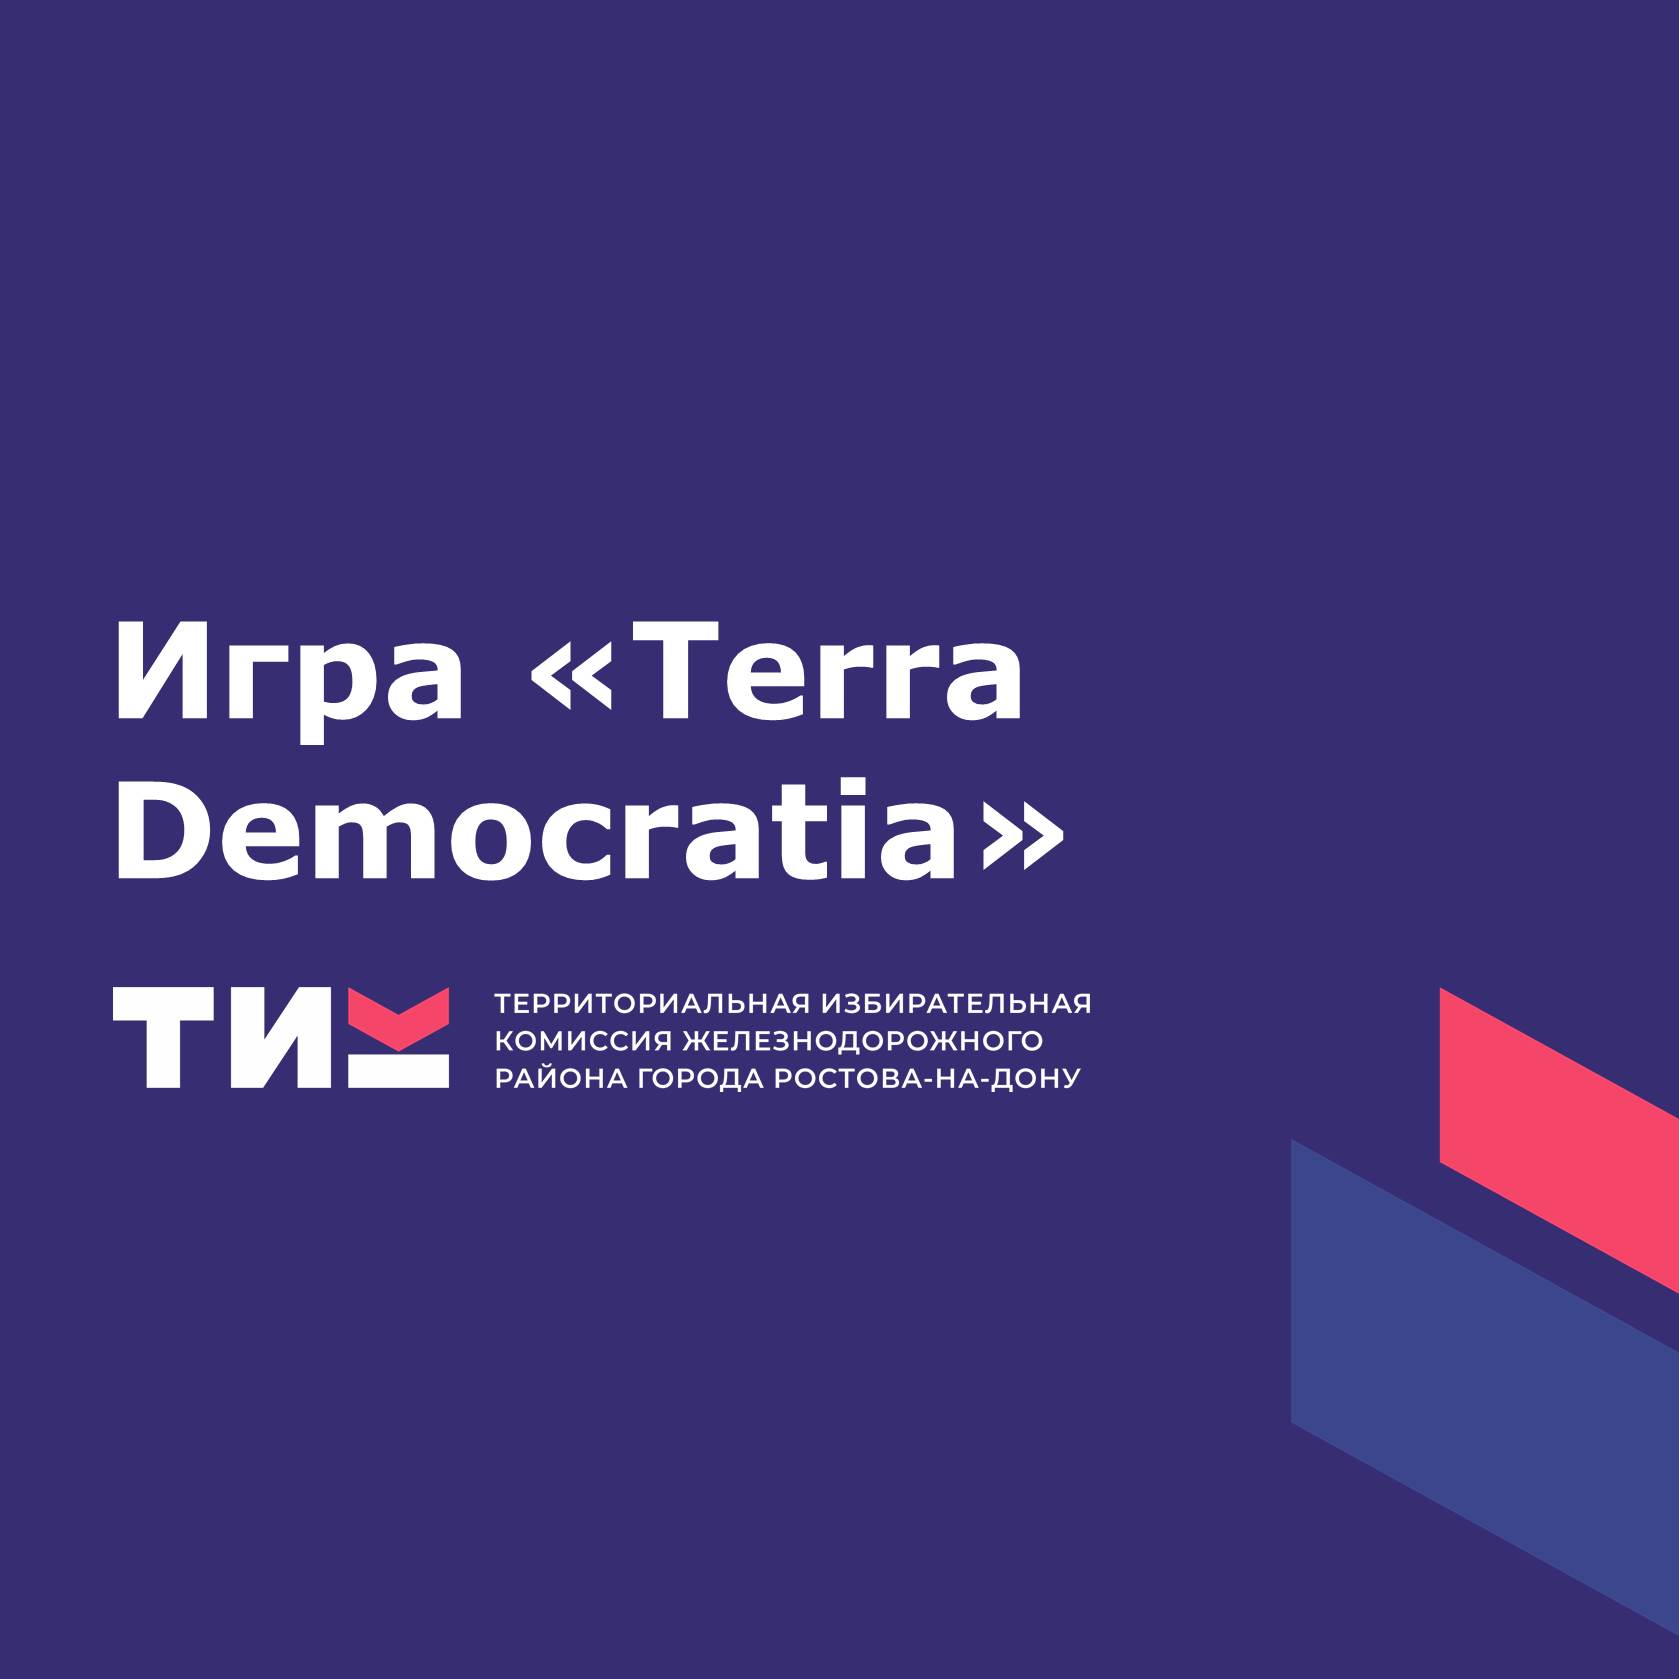 Игра "Terra Democratia"